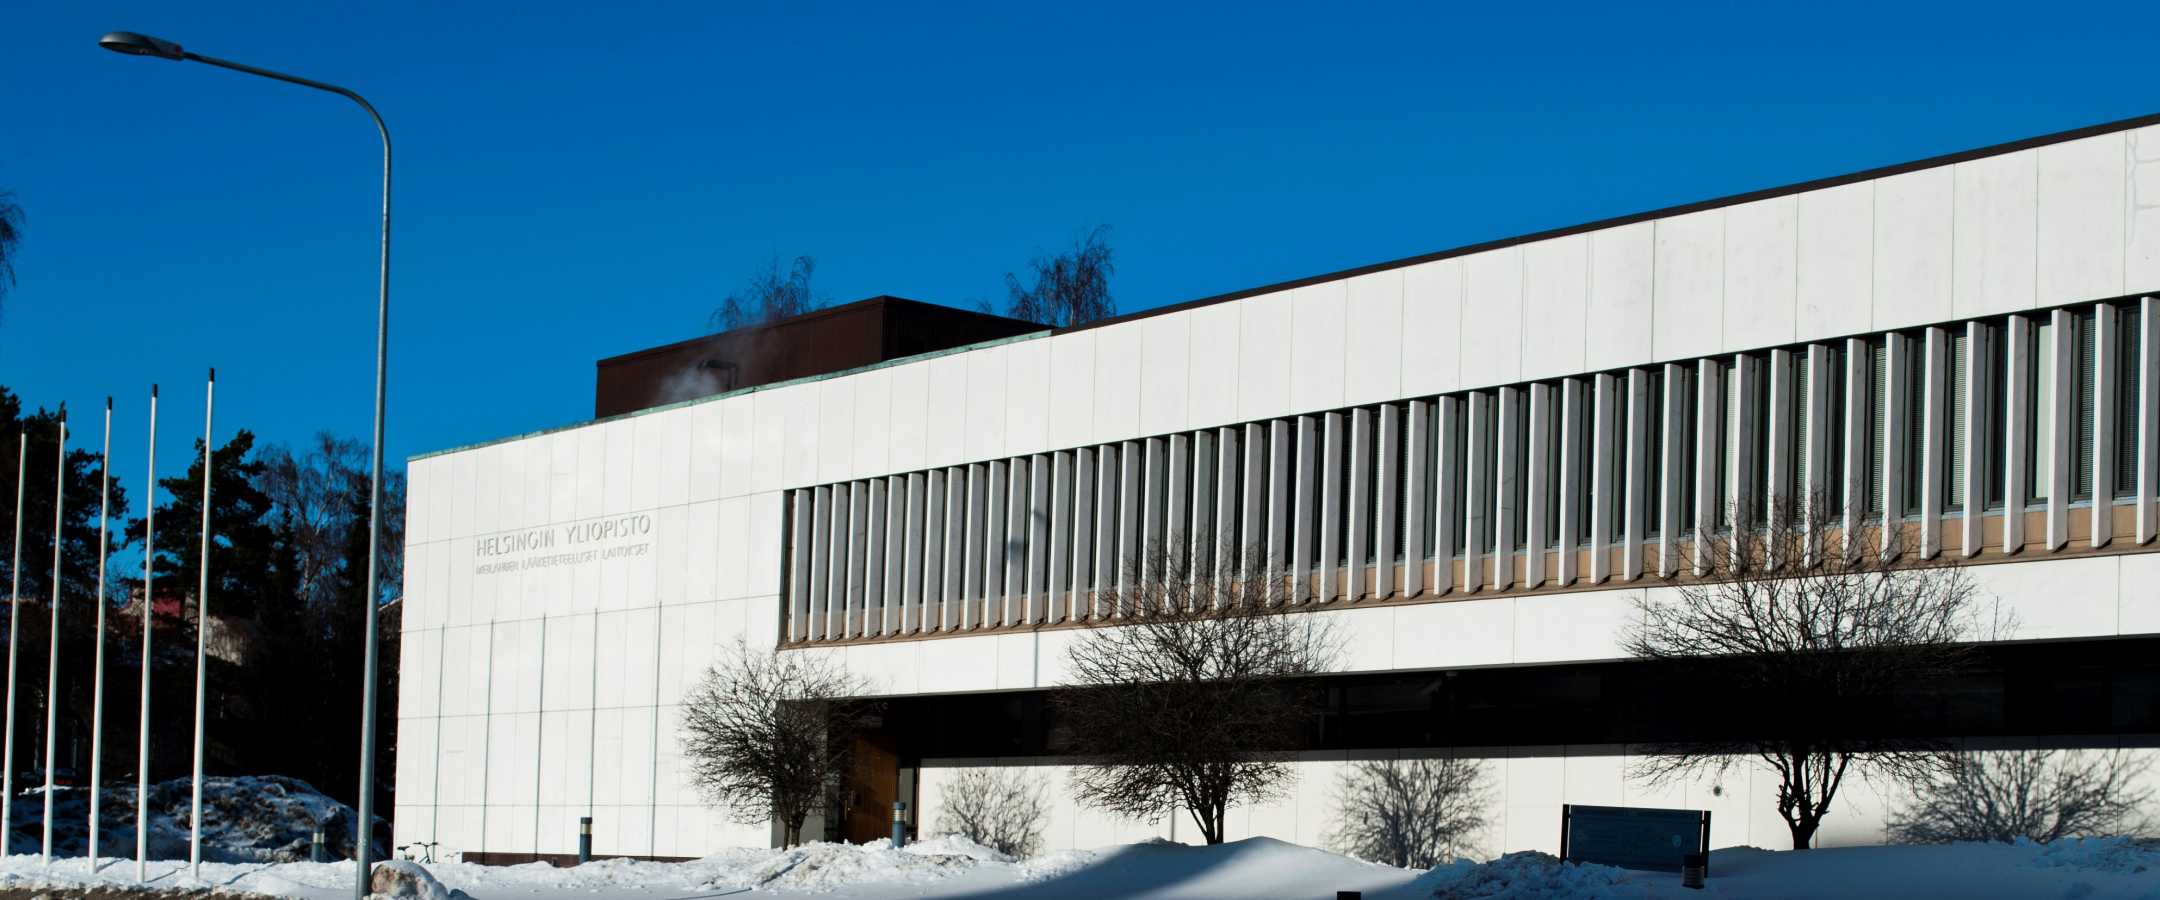 Haartman institute facade